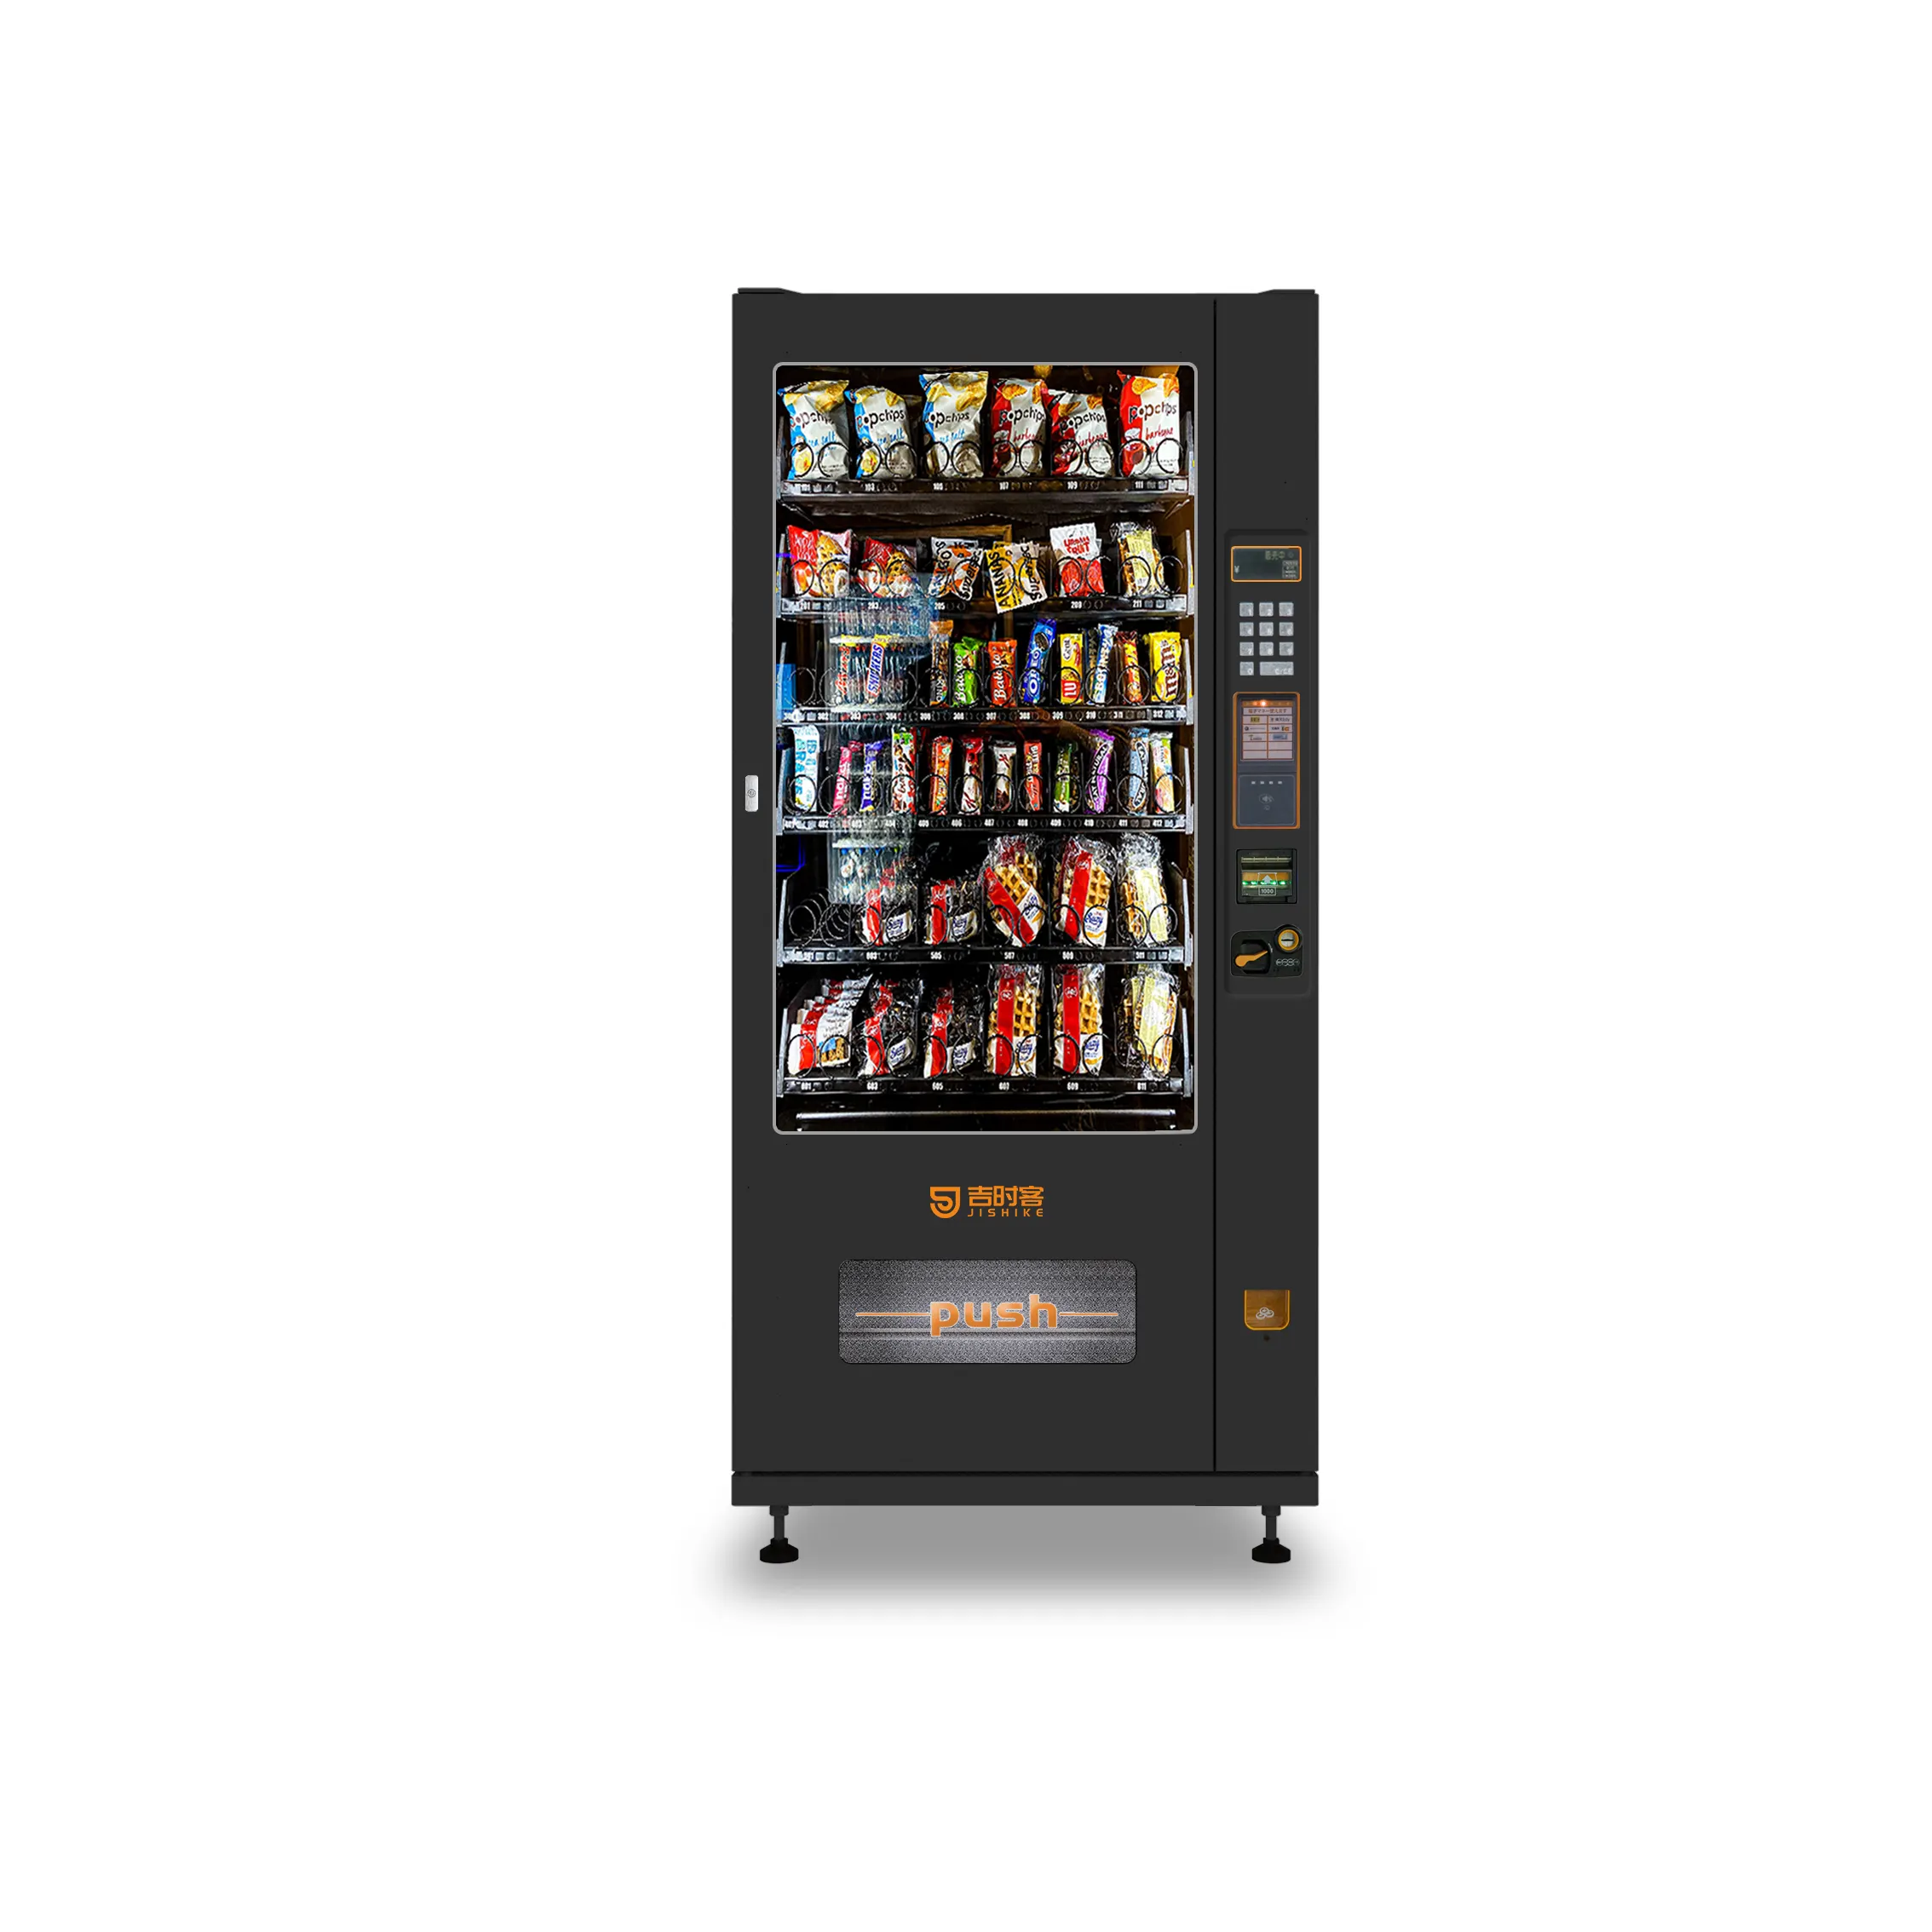 Penjualan terlaris mesin makanan ringan mesin penjual otomatis untuk mesin penjual makanan ringan dengan pembaca kartu